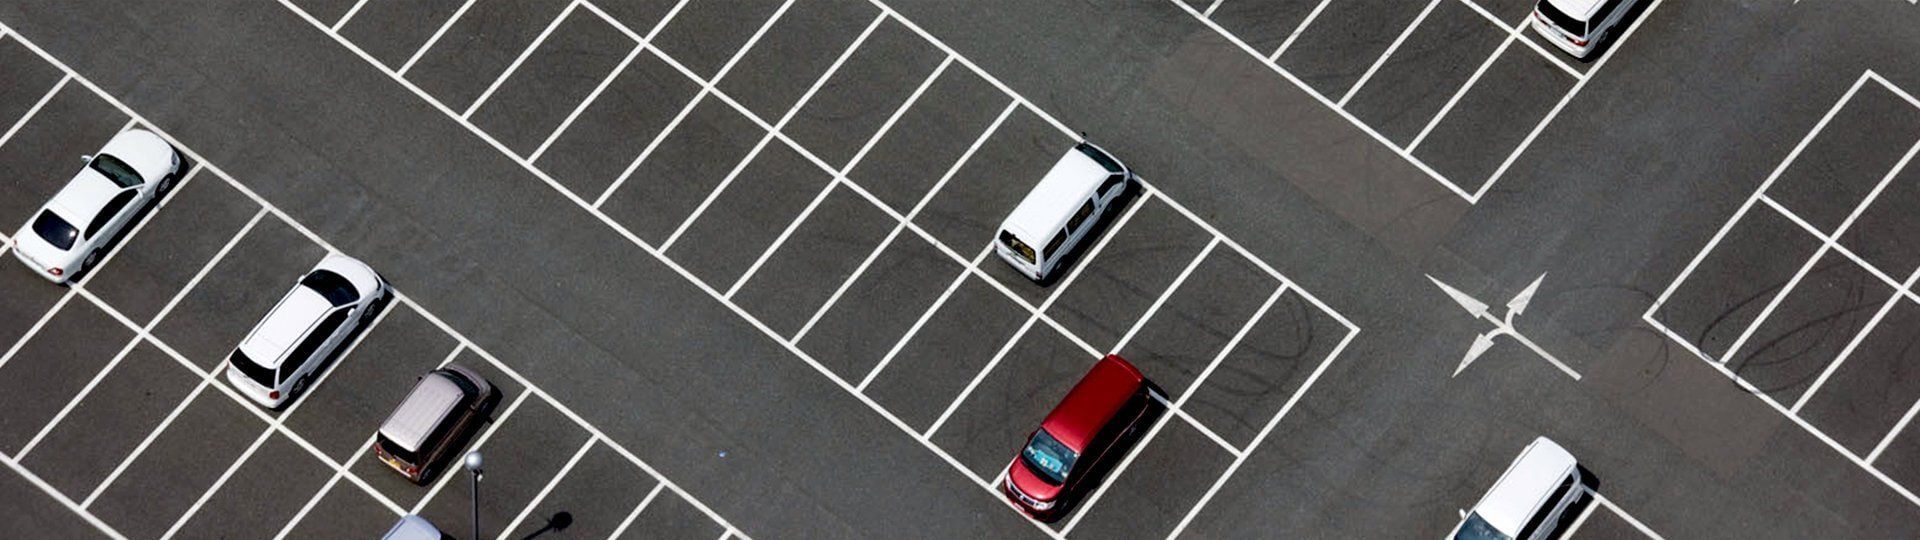 Retail car parks image